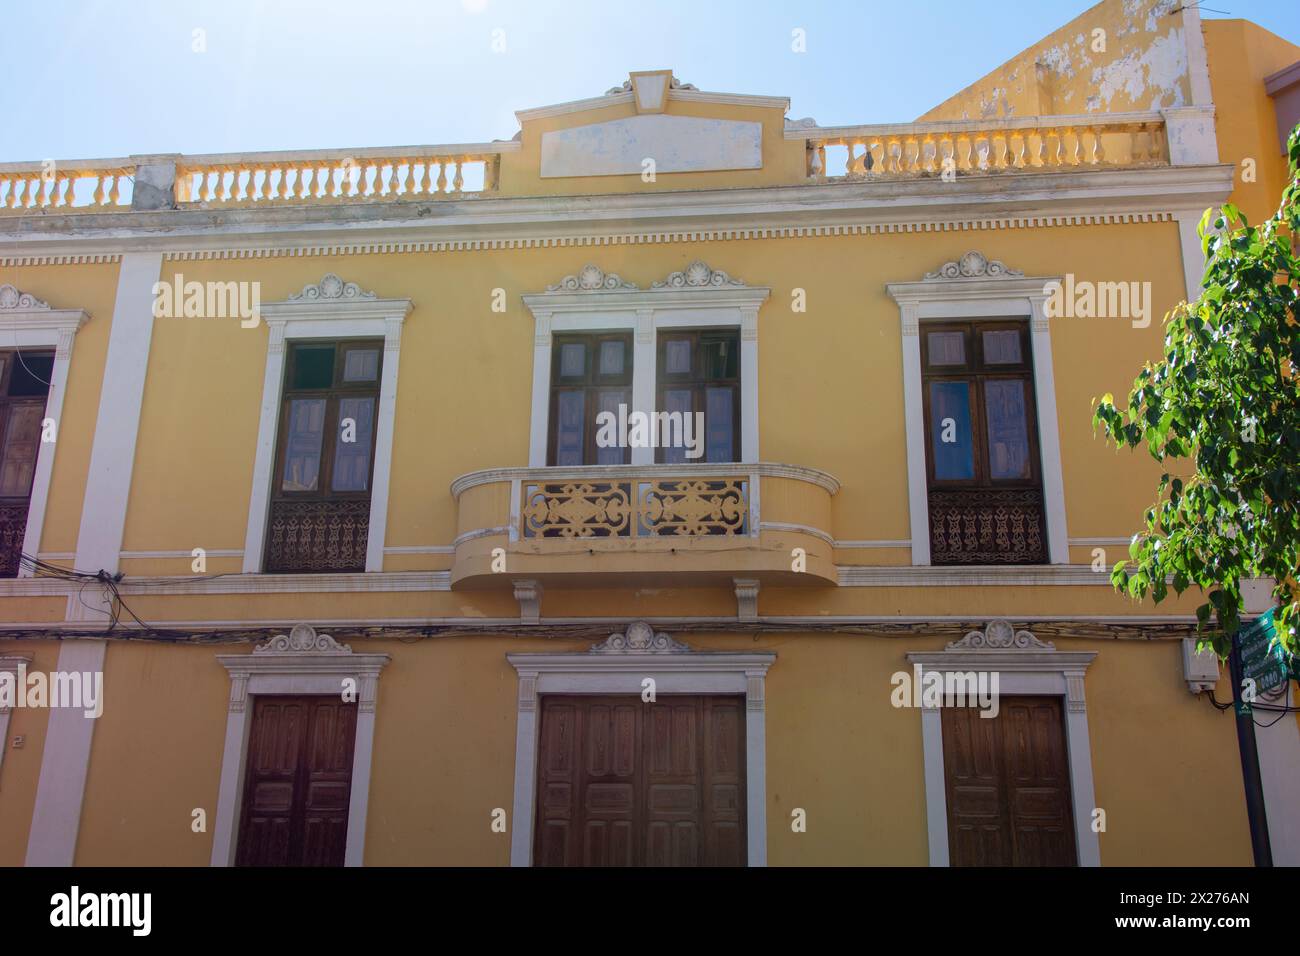 Ancienne maison jaune avec balcon dans la ville espagnole de Galdar sur Gran Canaria Banque D'Images